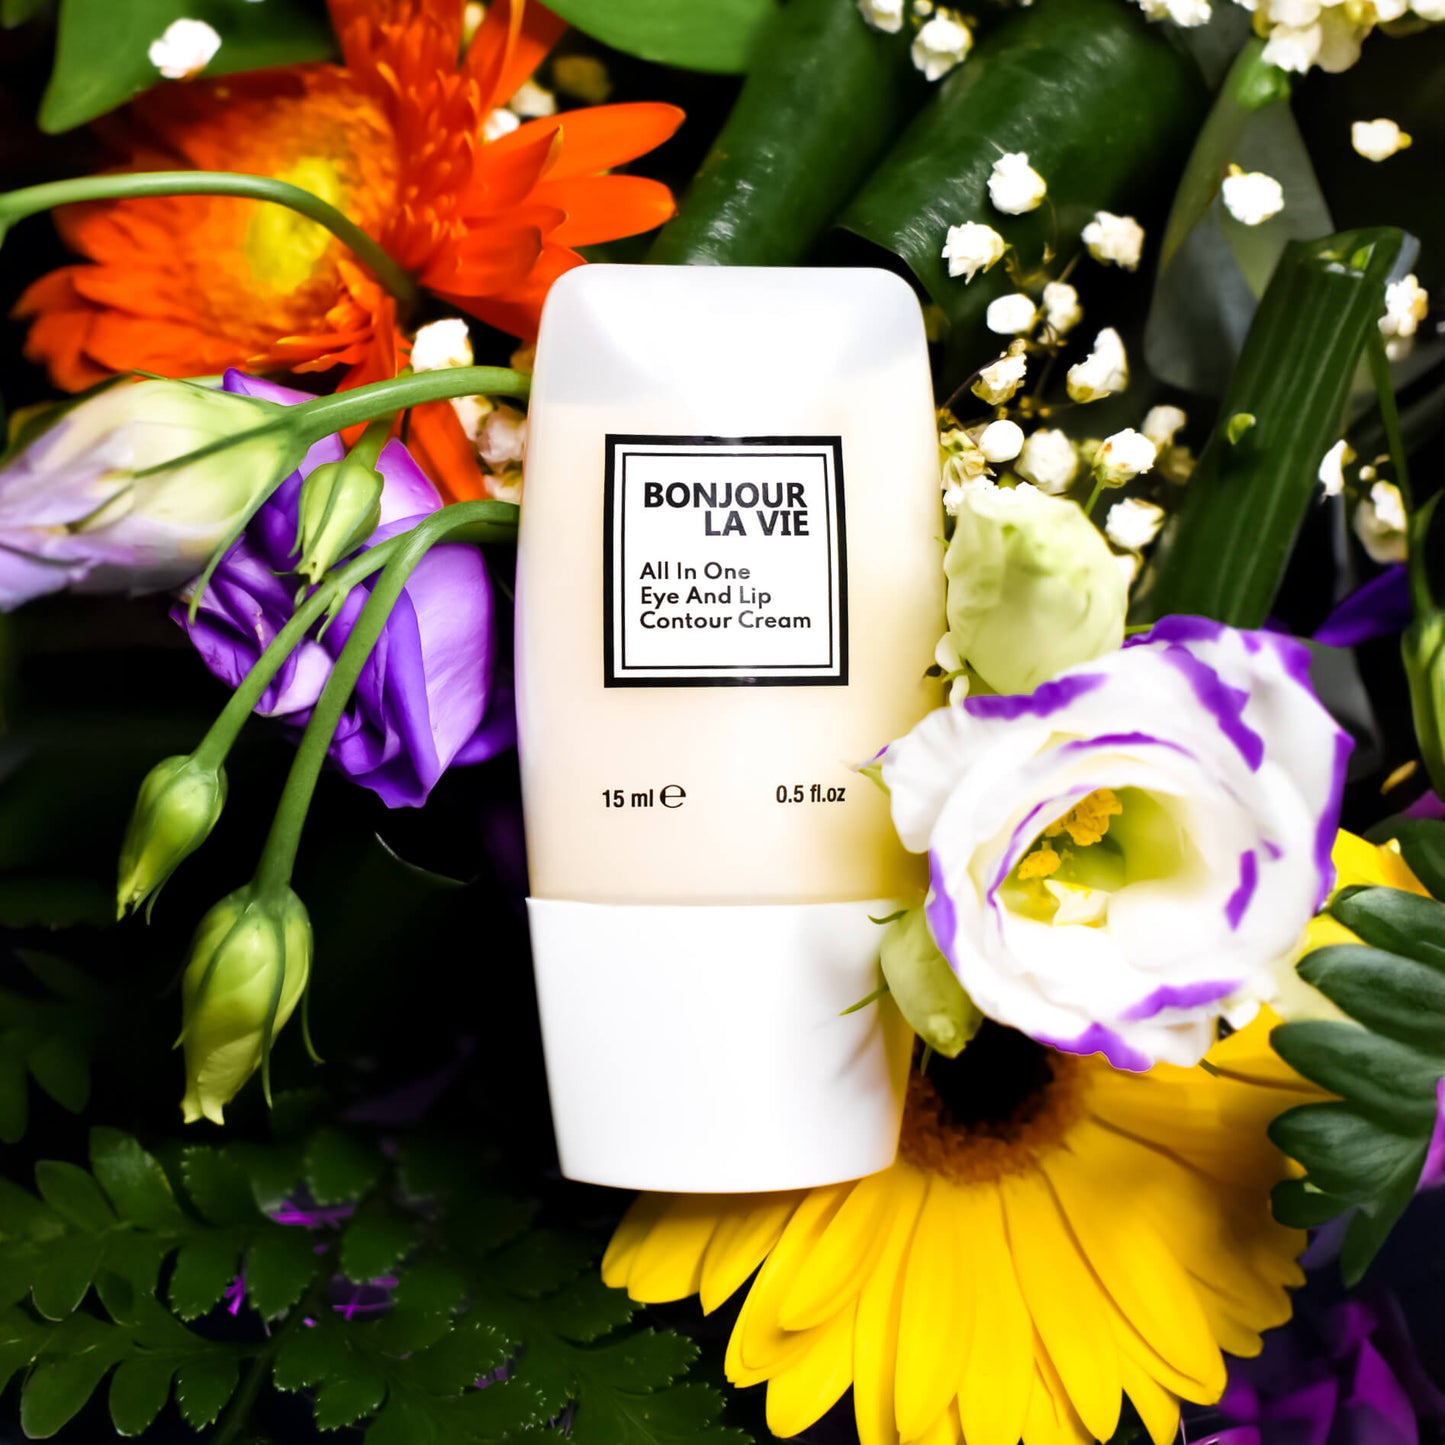 Immagine del Flacone di 'Bonjour La Vie - All In One Eye And Lip Contour Cream' da 15 ml tra fiori viola, gialli, arancioni e piccoli fiori bianchi 